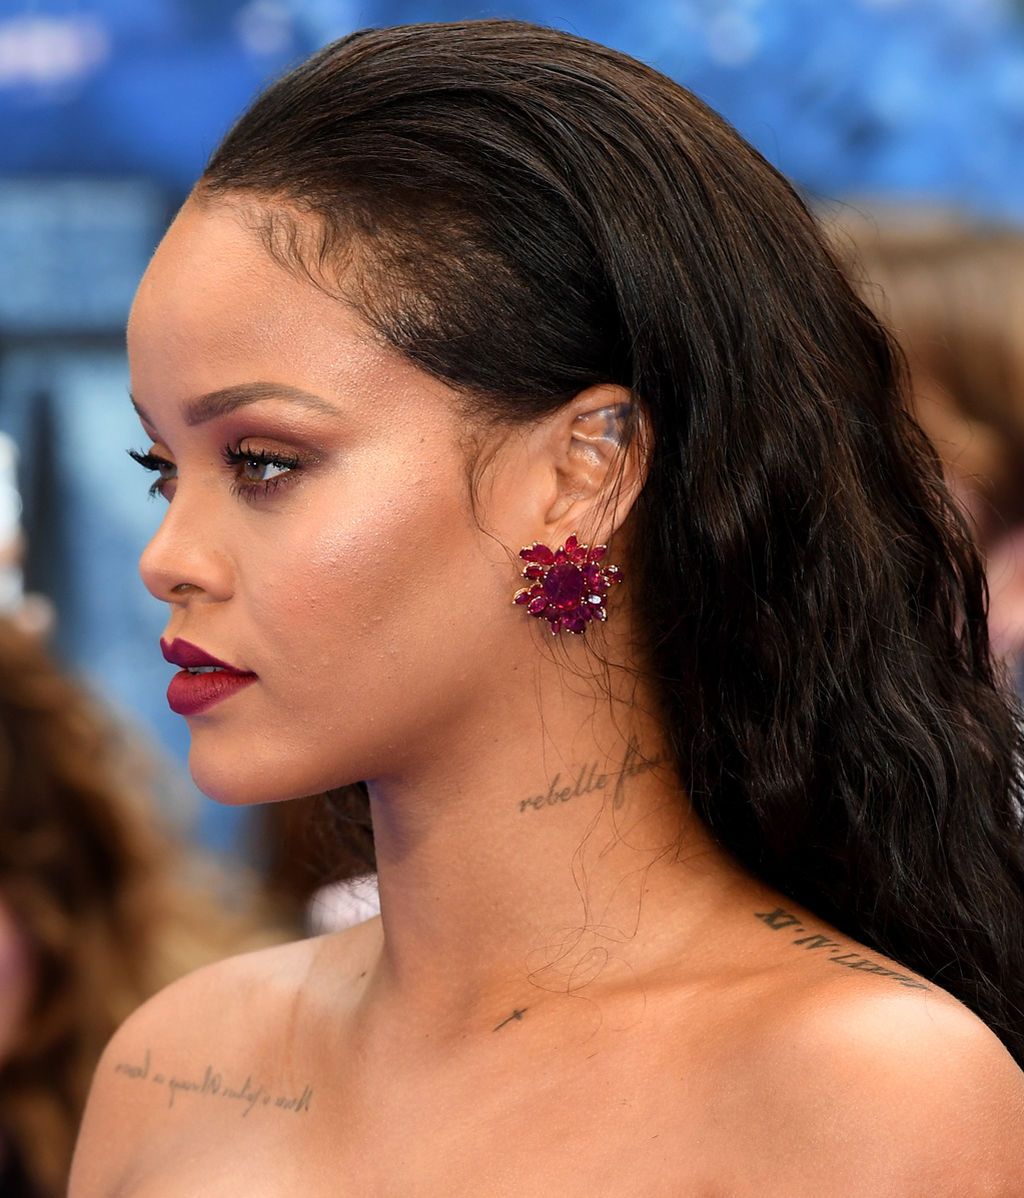 Principesco y 'push up': el vestido rojo de Rihanna paraliza un estreno en Londres